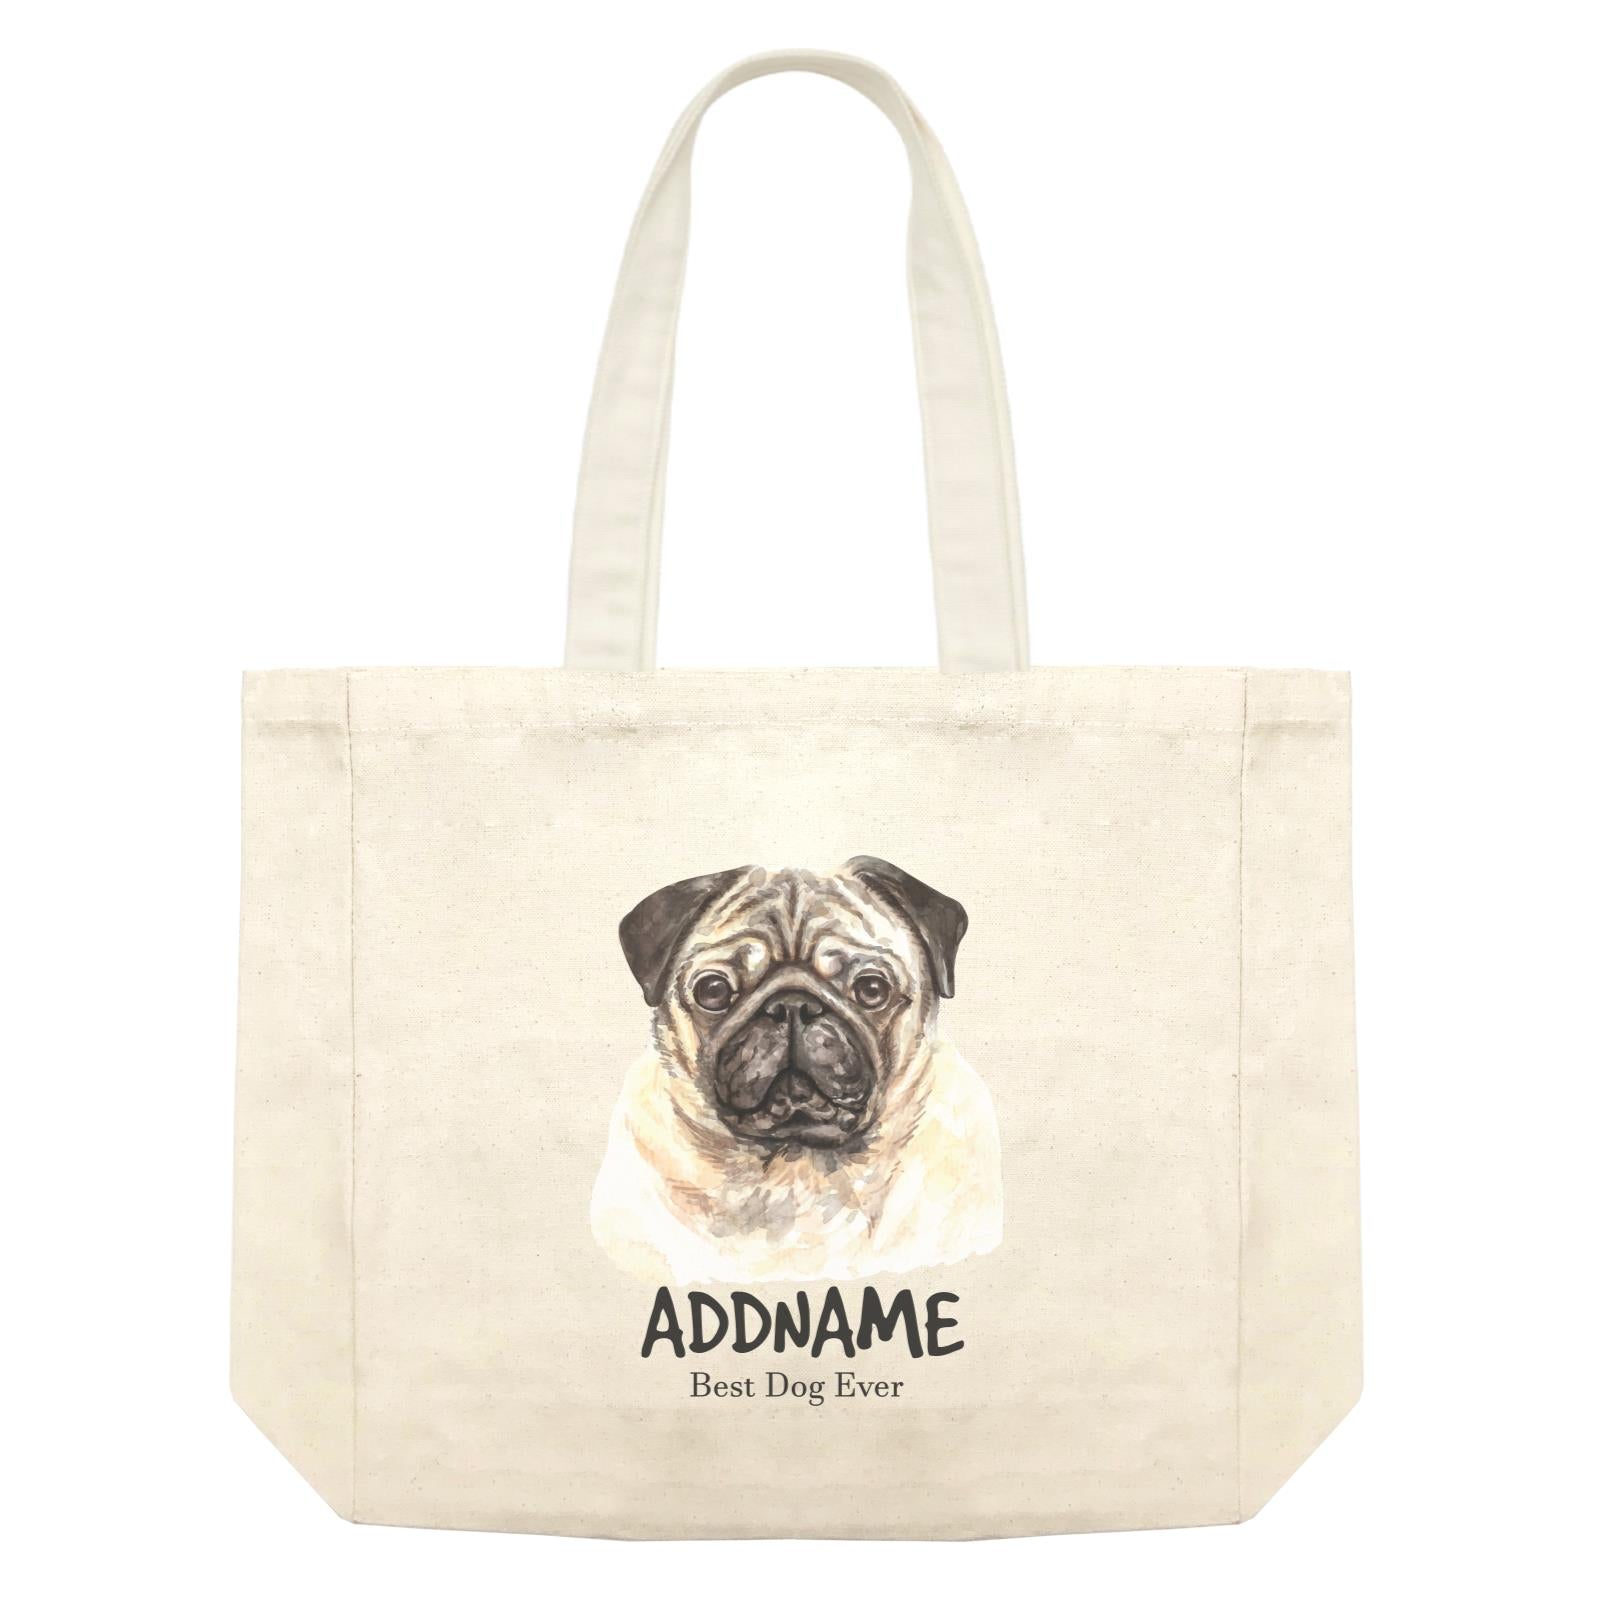 Watercolor Dog Pug Dog Best Dog Ever Addname Shopping Bag